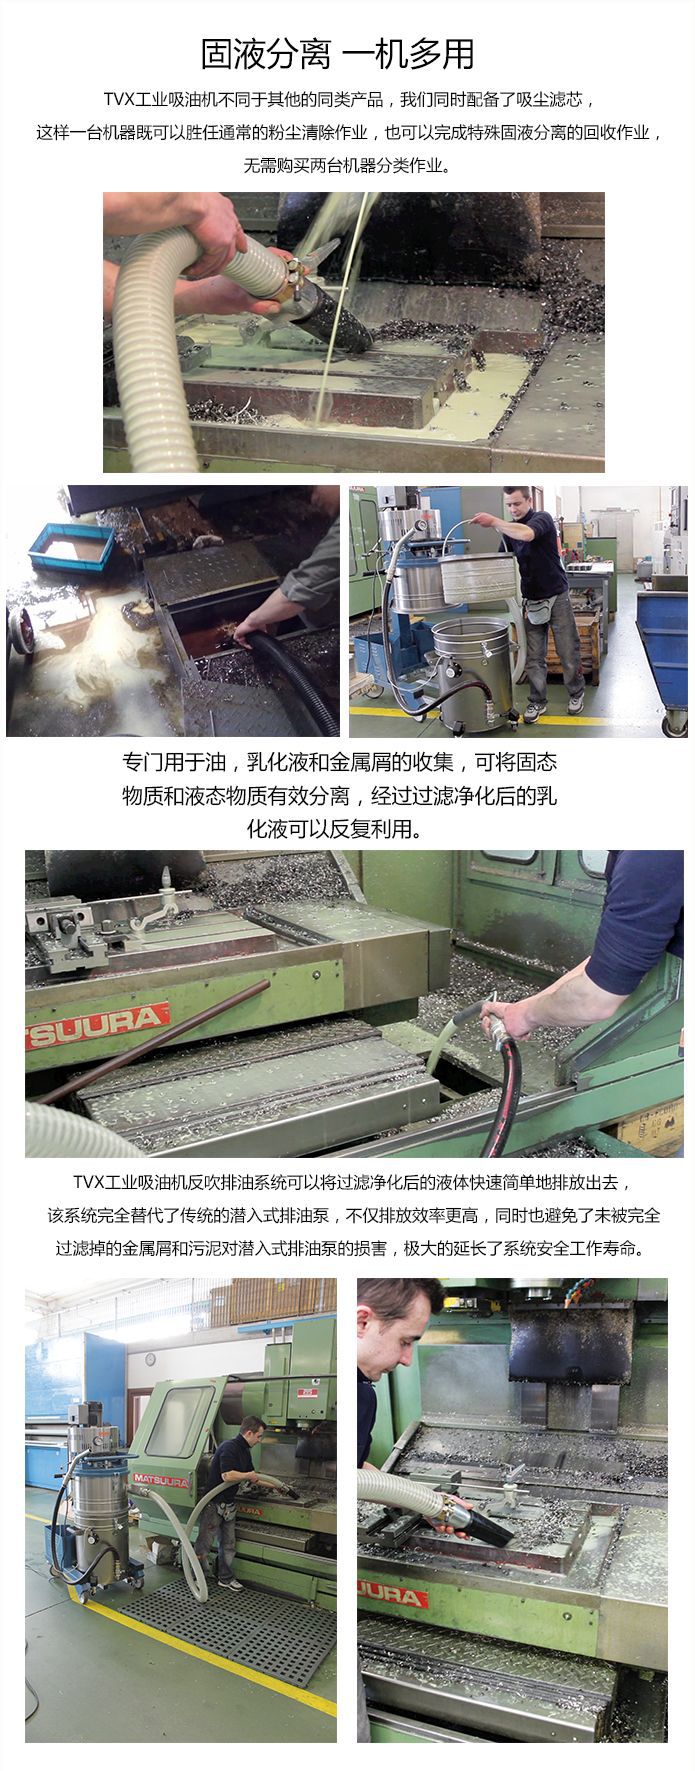 工业吸油机用于机械加工金属加工机床机油回收并分离铁屑的使用案例